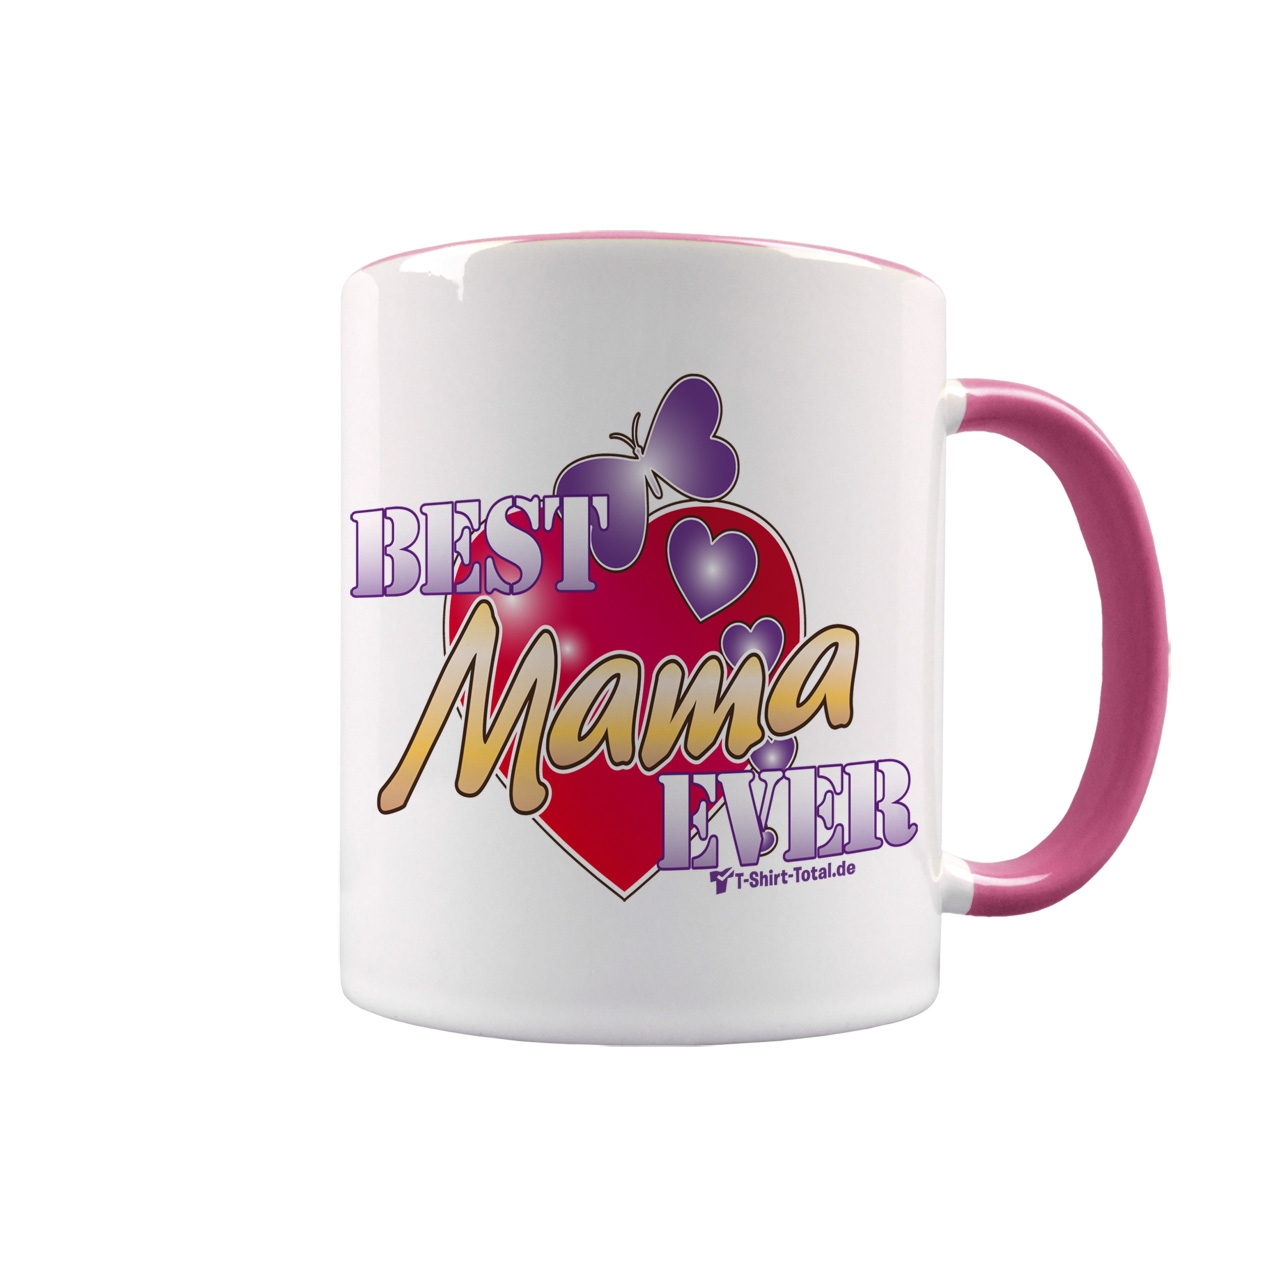 Best Mama ever Tasse rosa / weiß